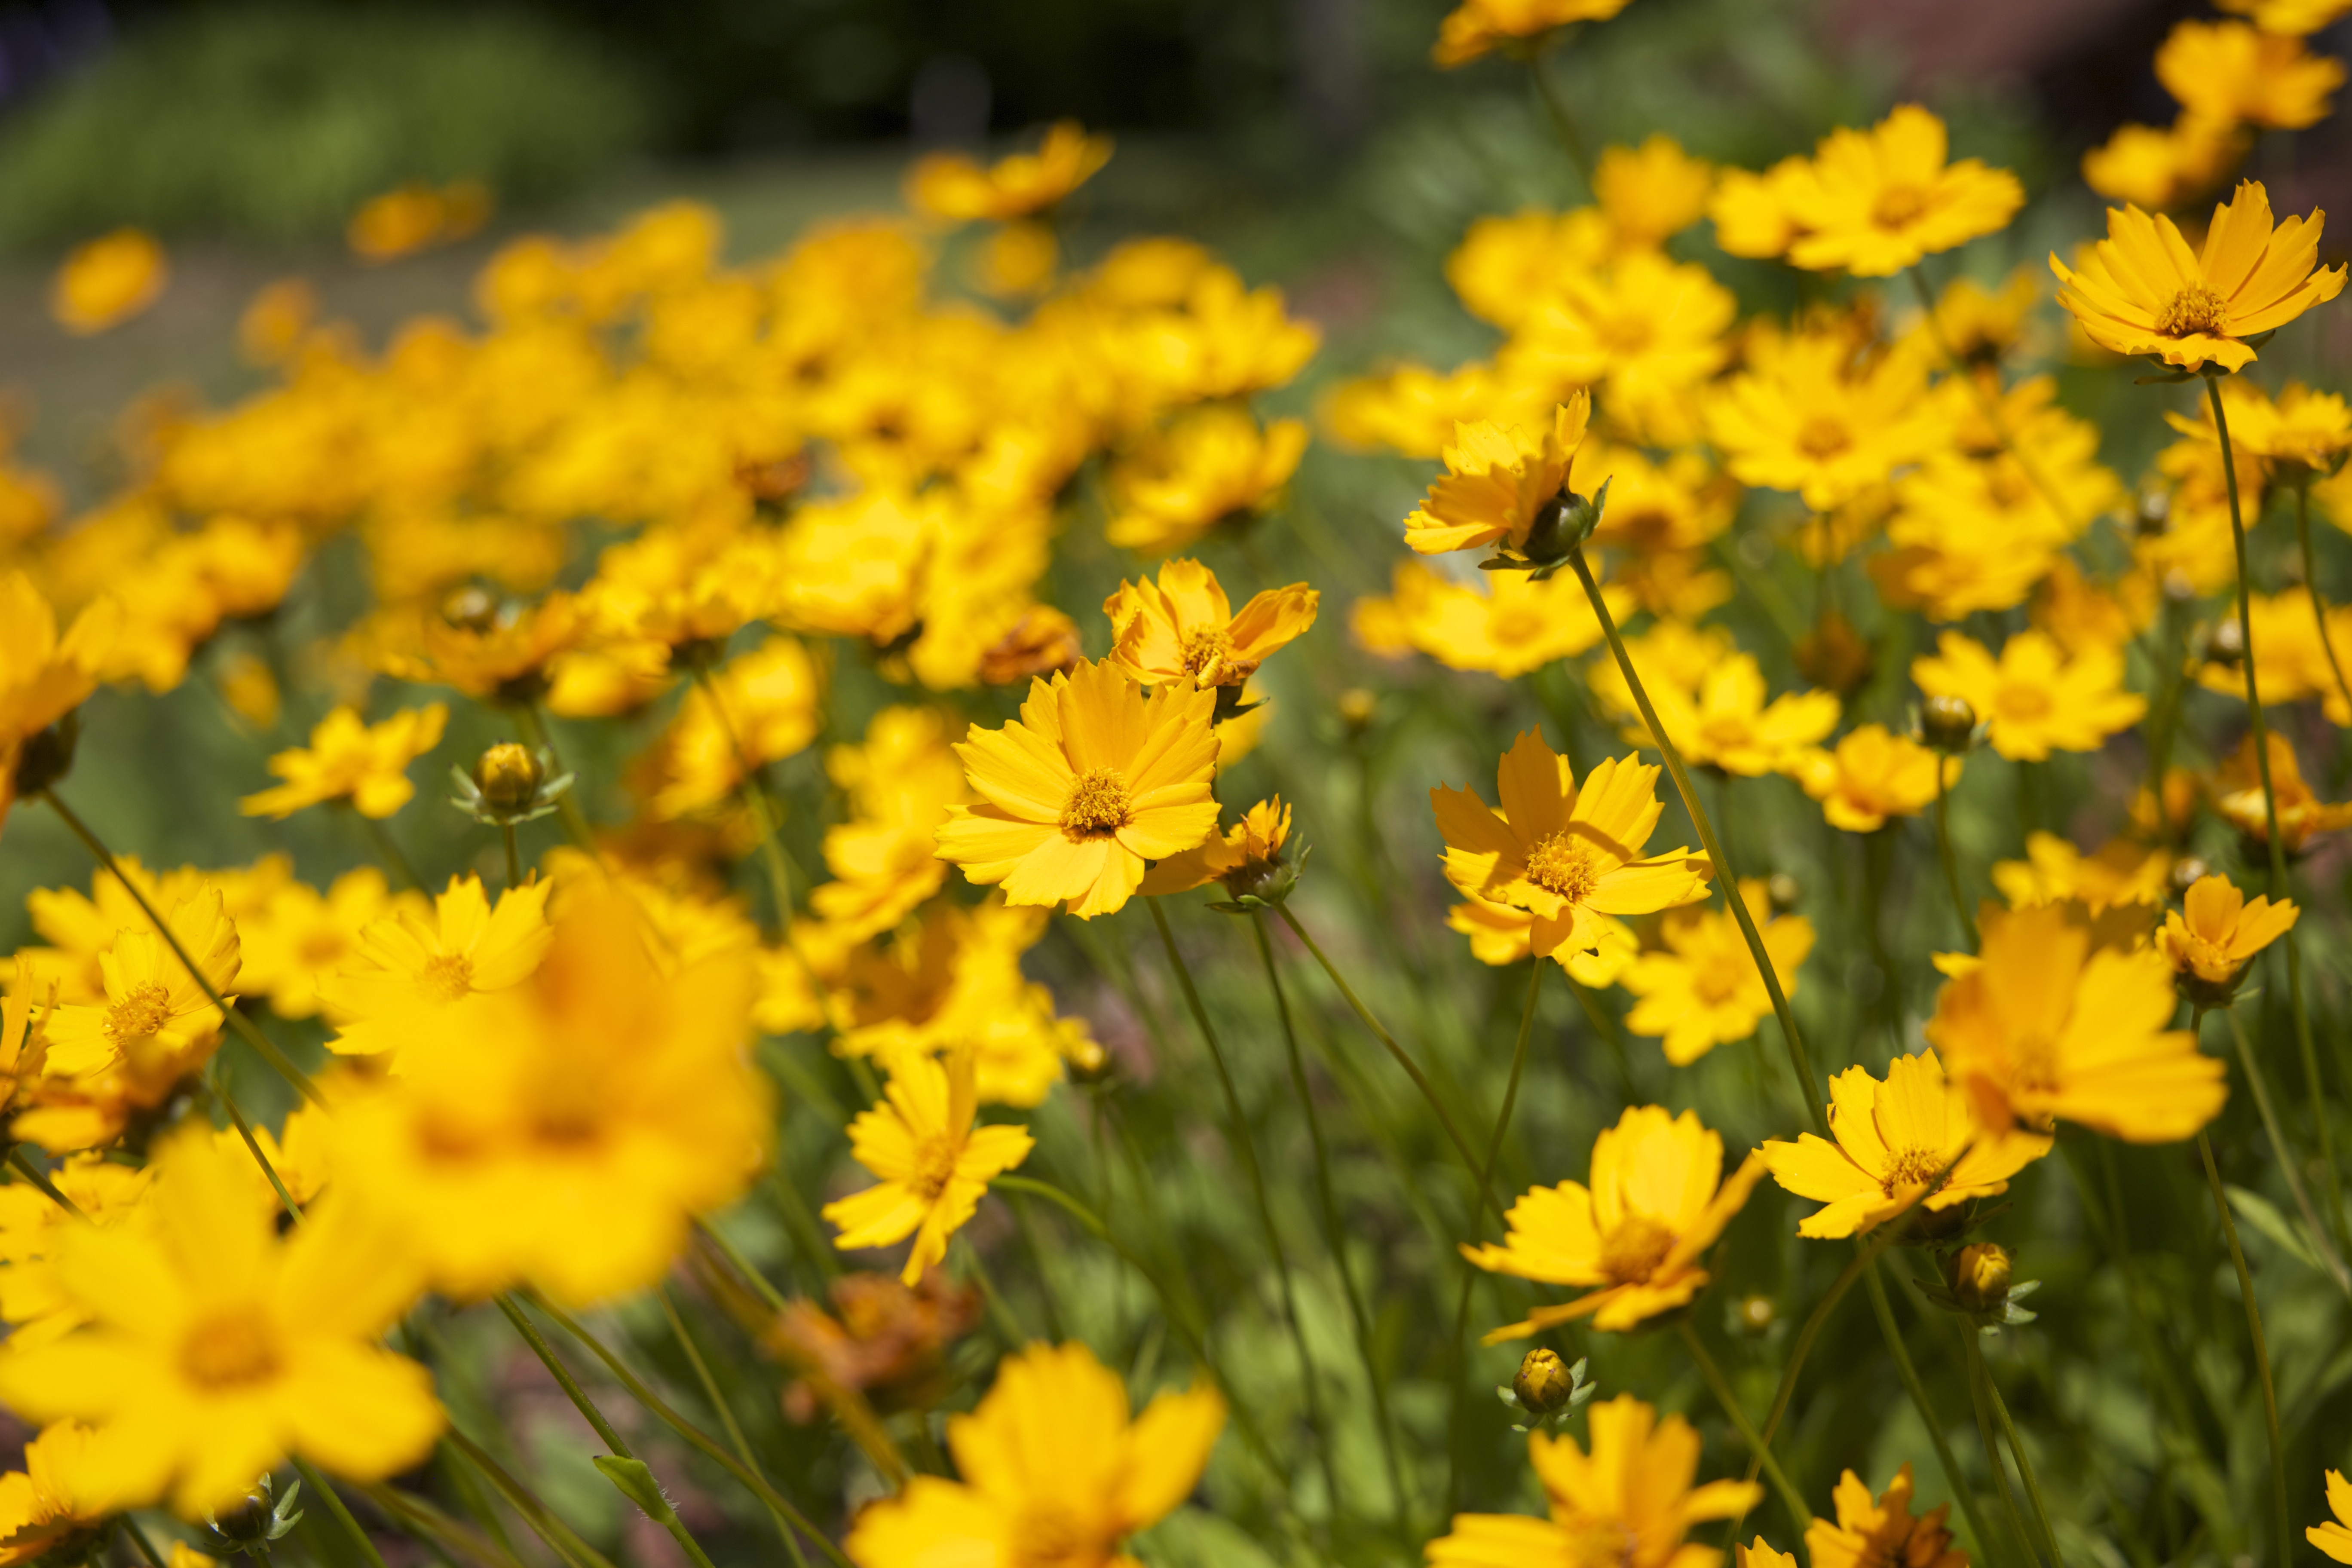 yellow petaled flowers on field